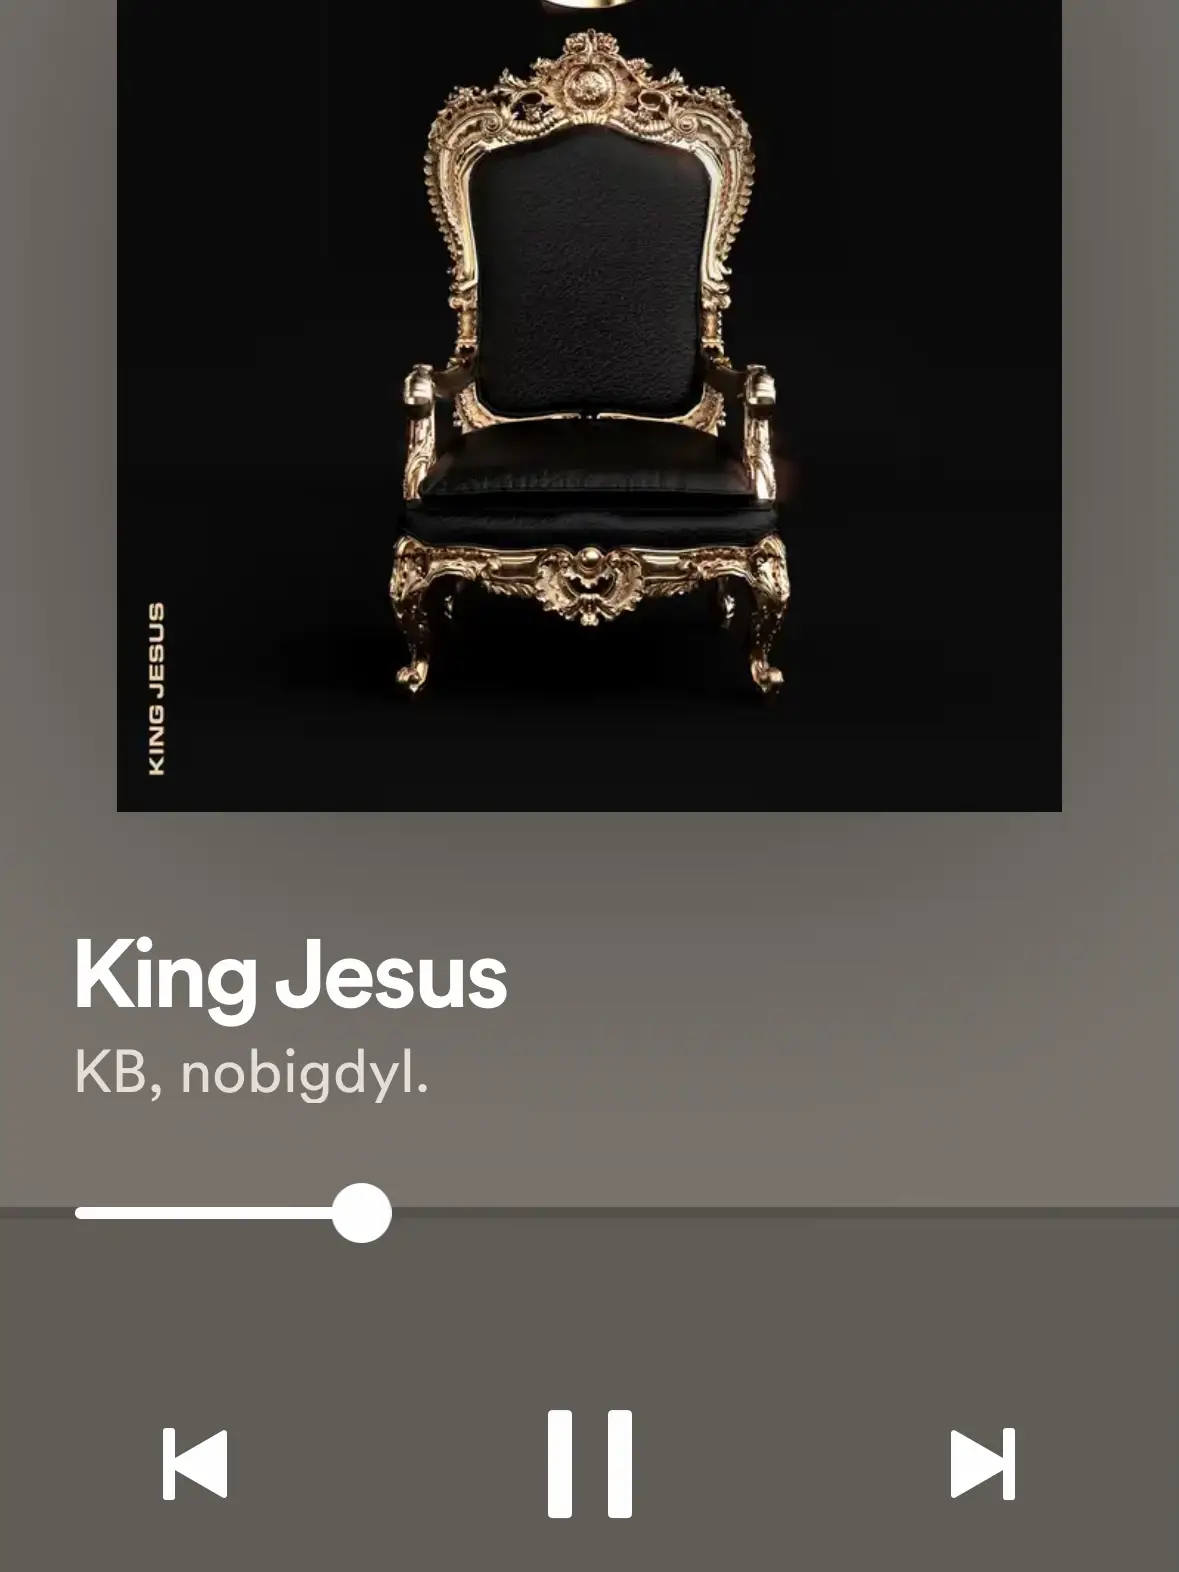 KB & nobigdyl. – King Jesus Lyrics